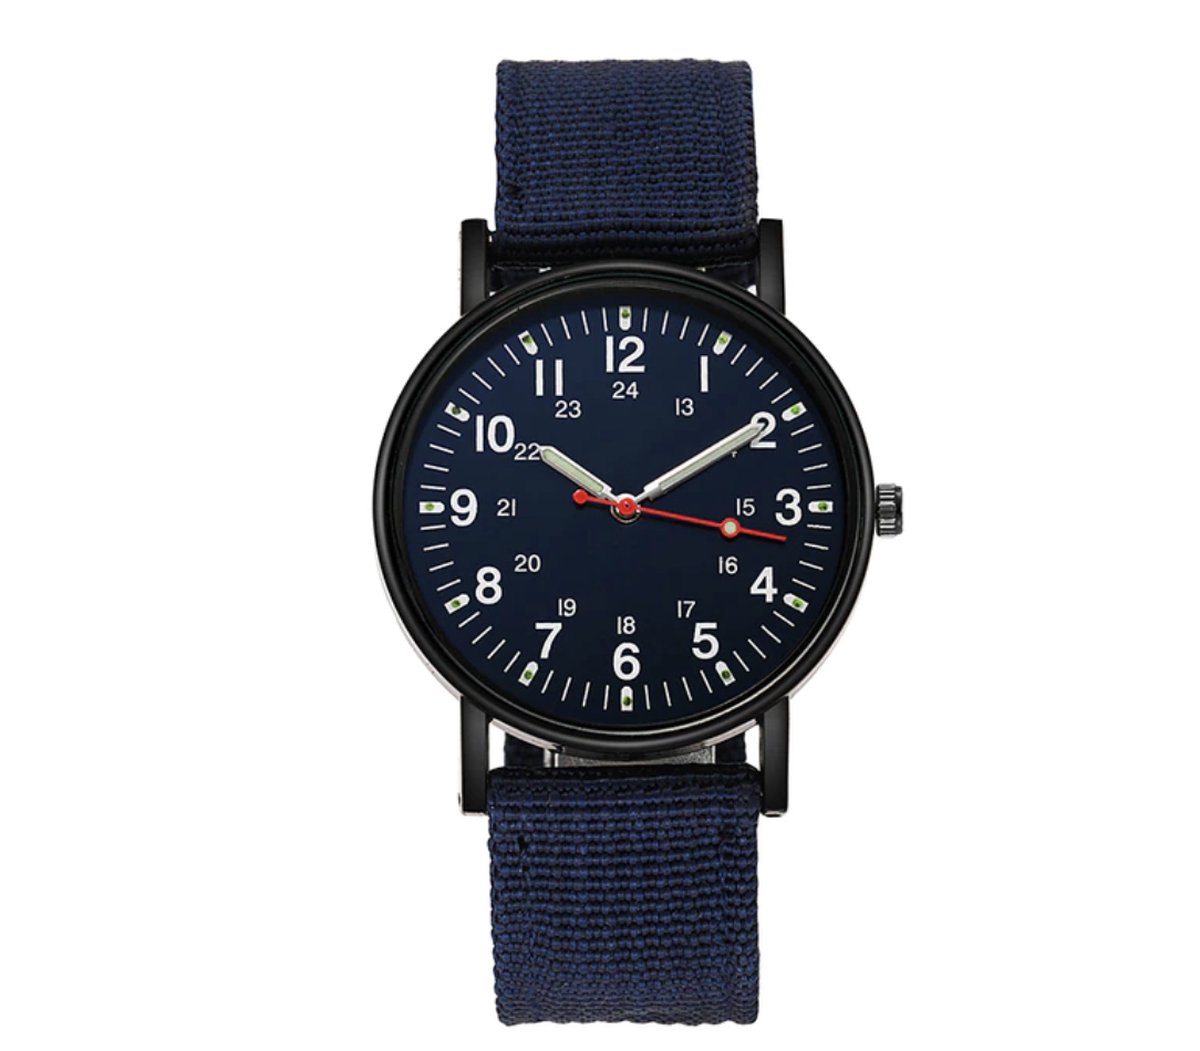 Horloge heren | donkerblauwe heren horloge | stoere heren horloge | sportieve horloge heren | donkerblauwe band horloge |  horloge lichtgevende wijzers (in het donker) | maat ⌀ 40 mm | stoffen horloge band | cadeau voor man | unisex horloge